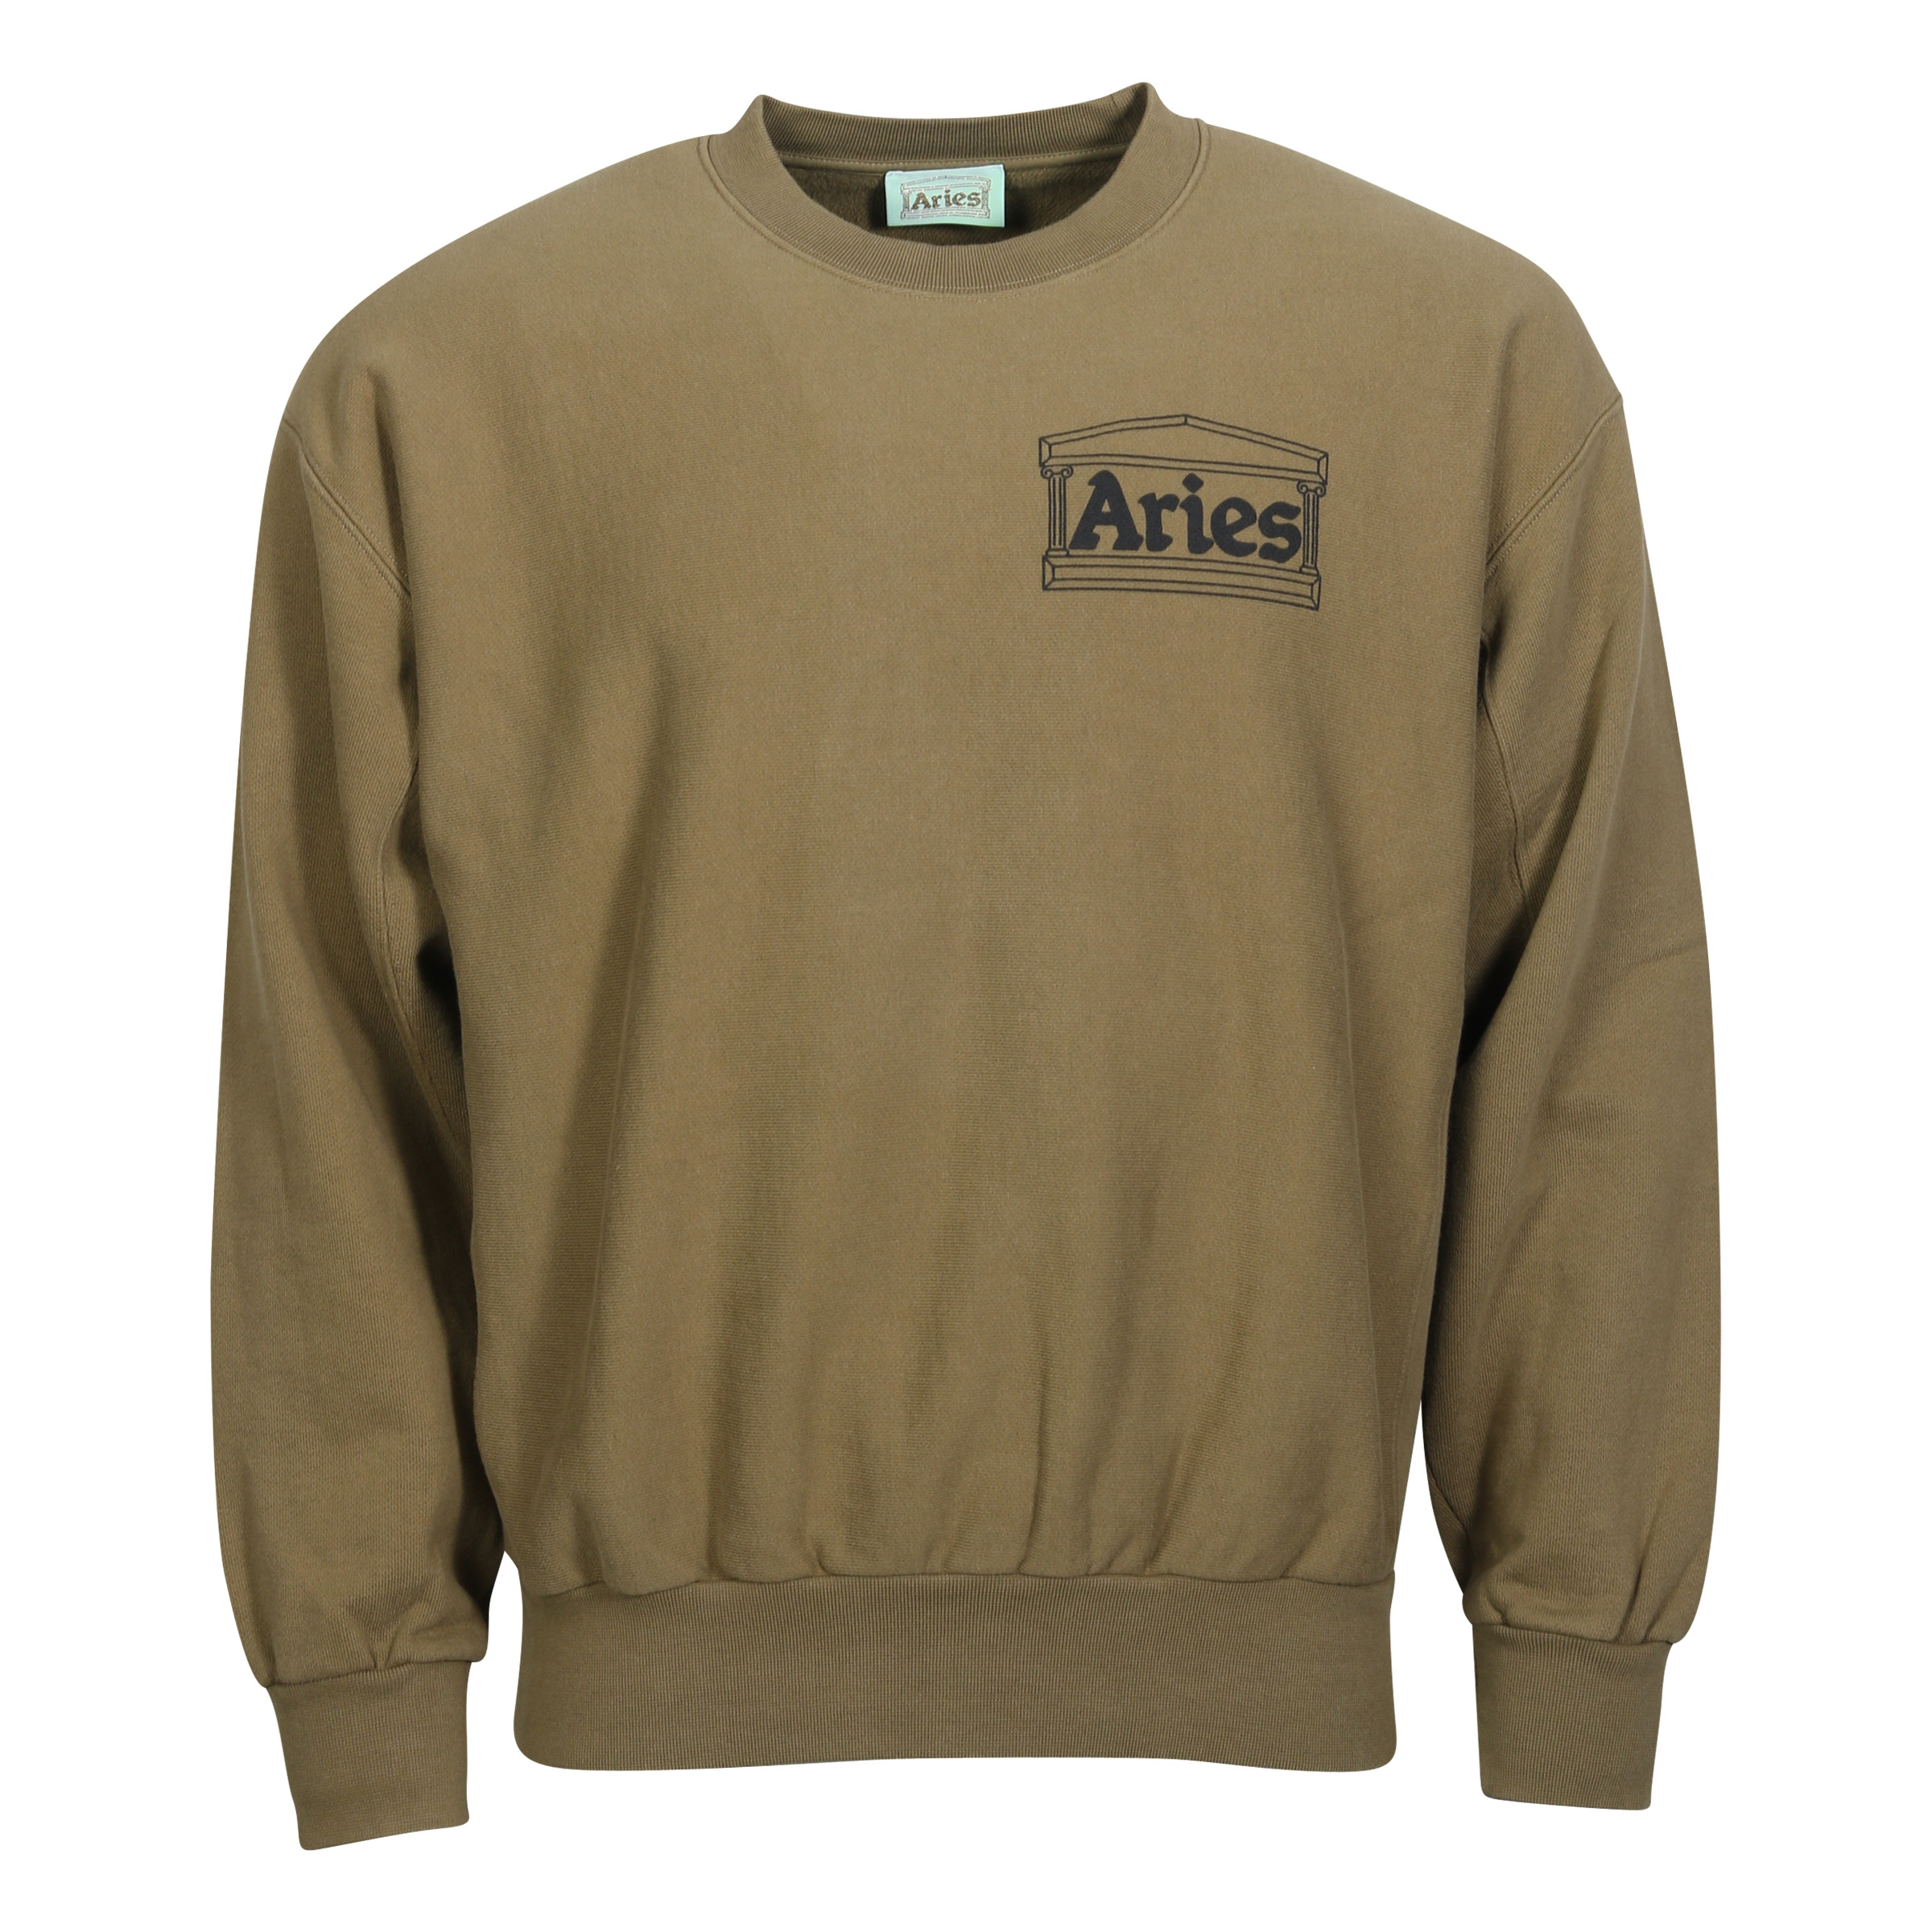 Unisex Aries Premium Temple Sweatshirt in Olive